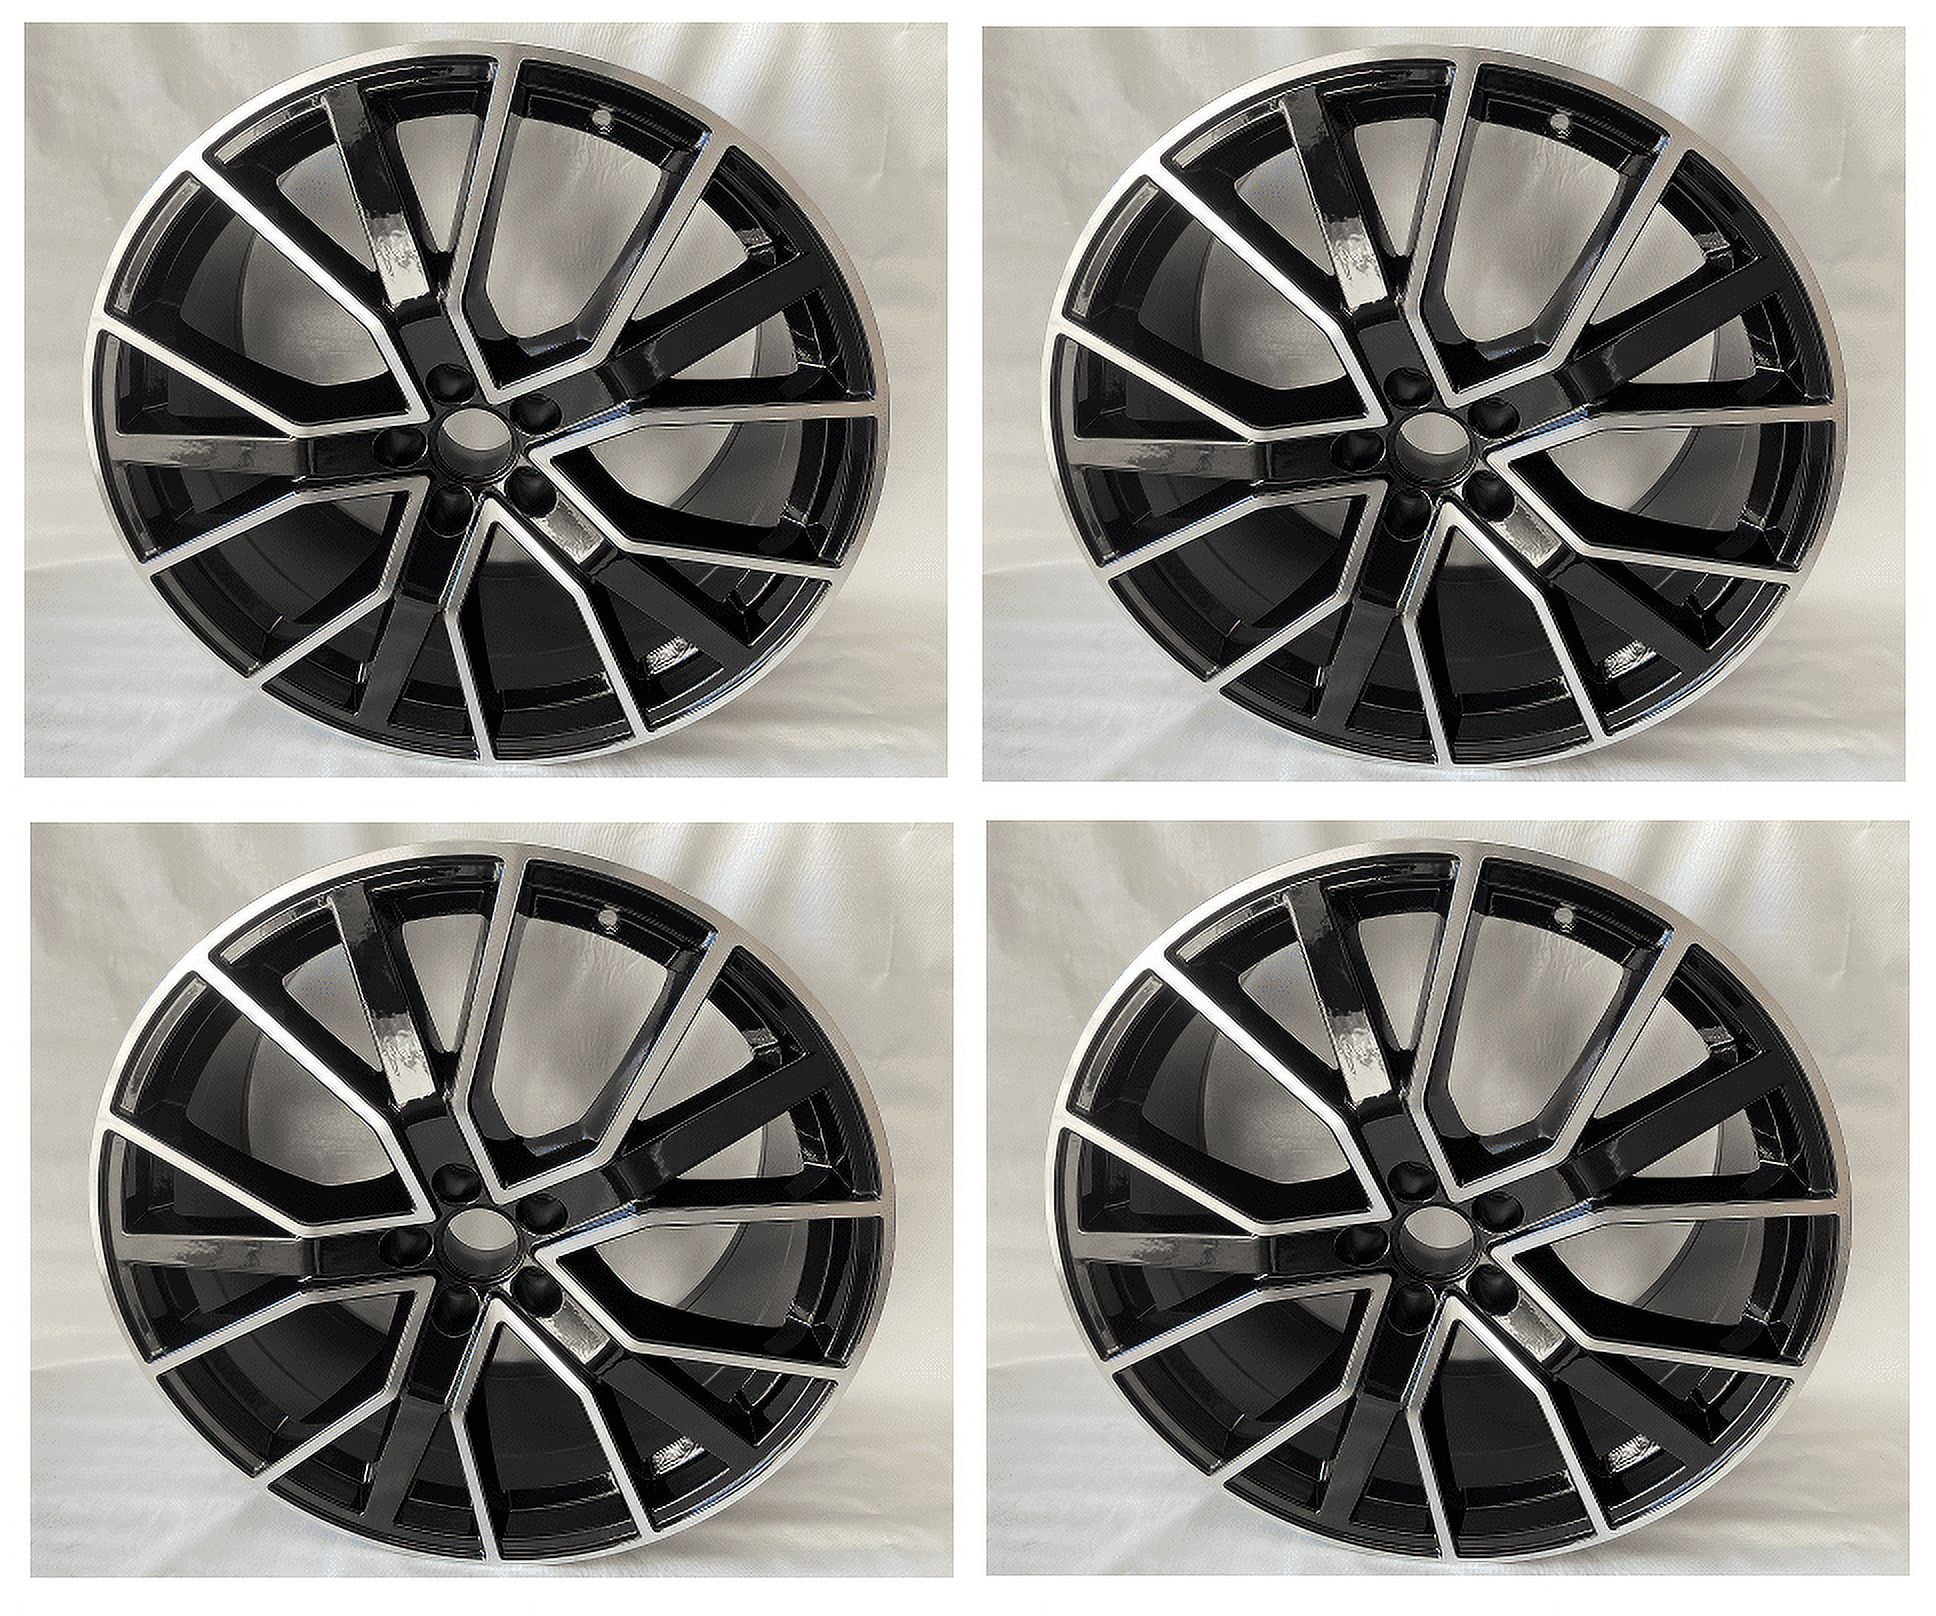 4PC 20 Inch Wheels Fits Audi A4 A5 S4 S5 A8 Q3 Q5 20x9.0 +25 5x112